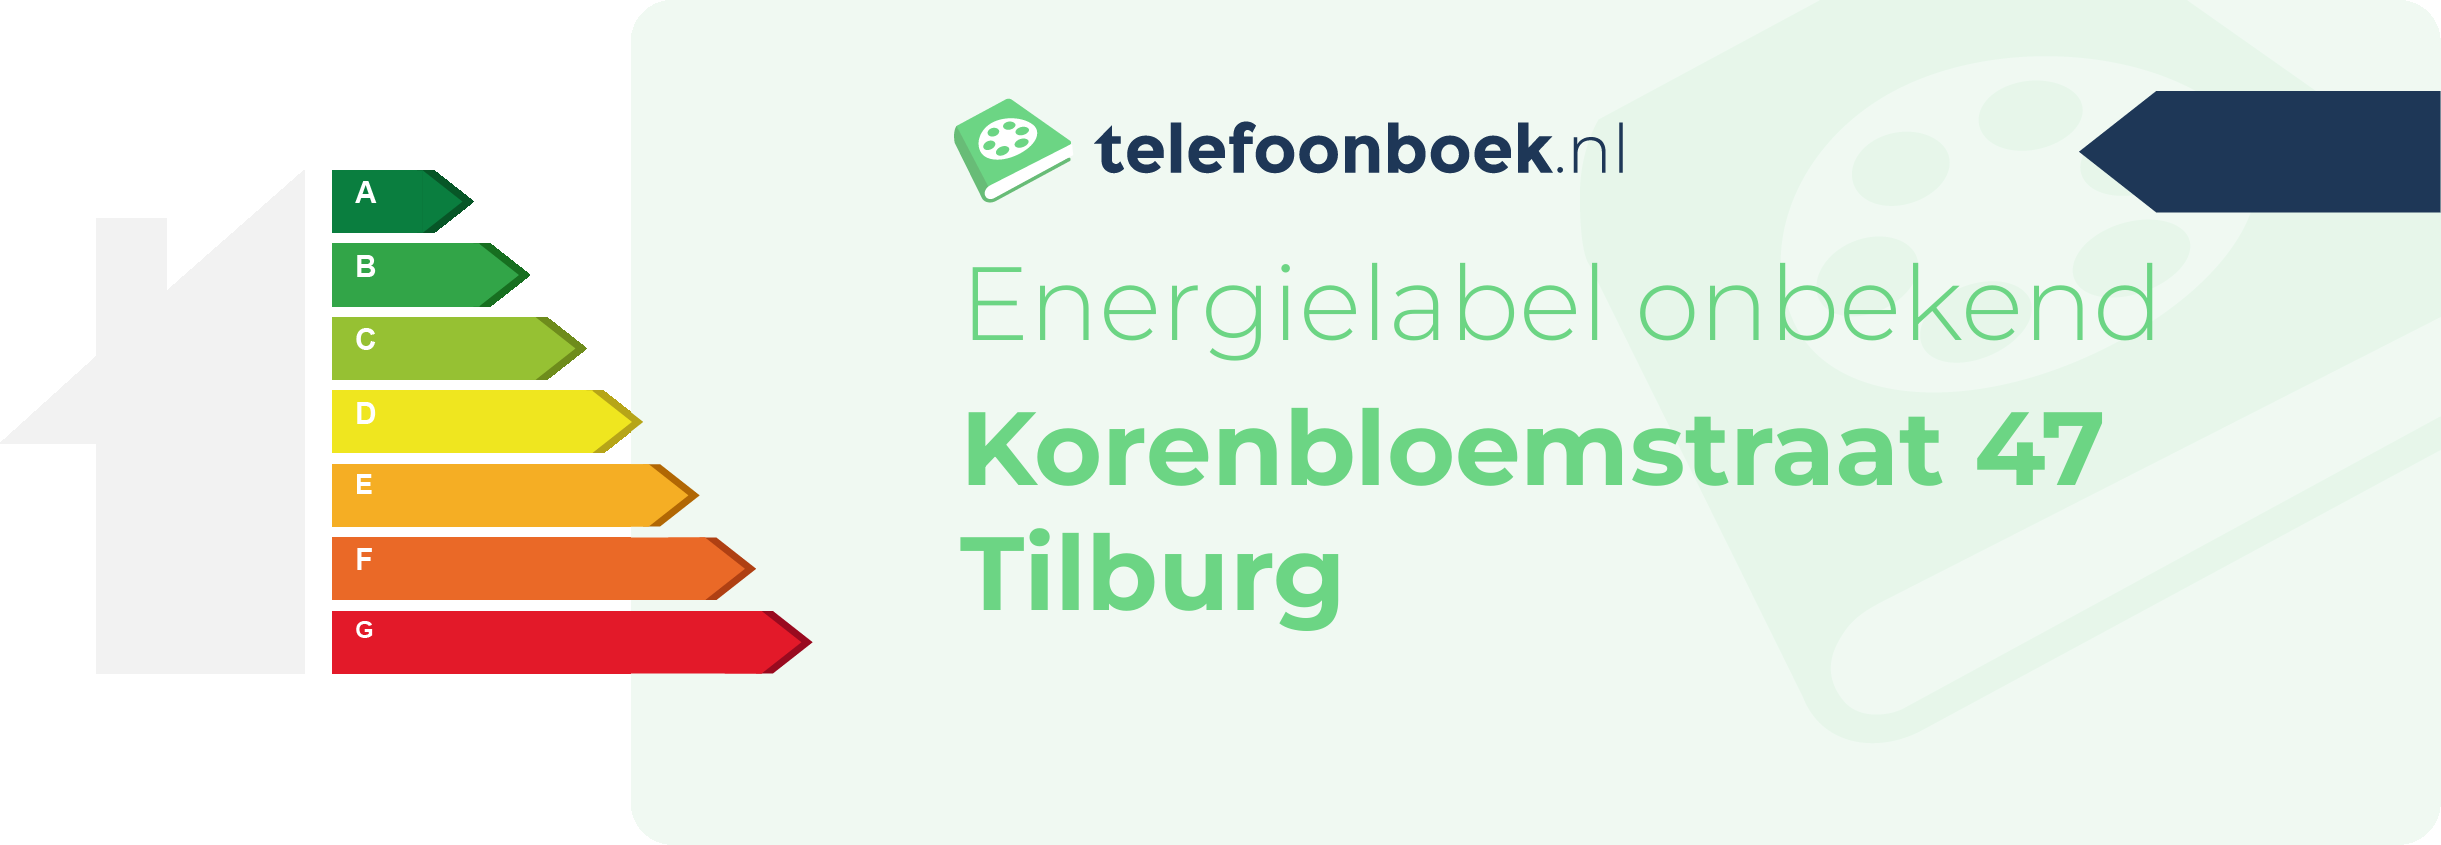 Energielabel Korenbloemstraat 47 Tilburg